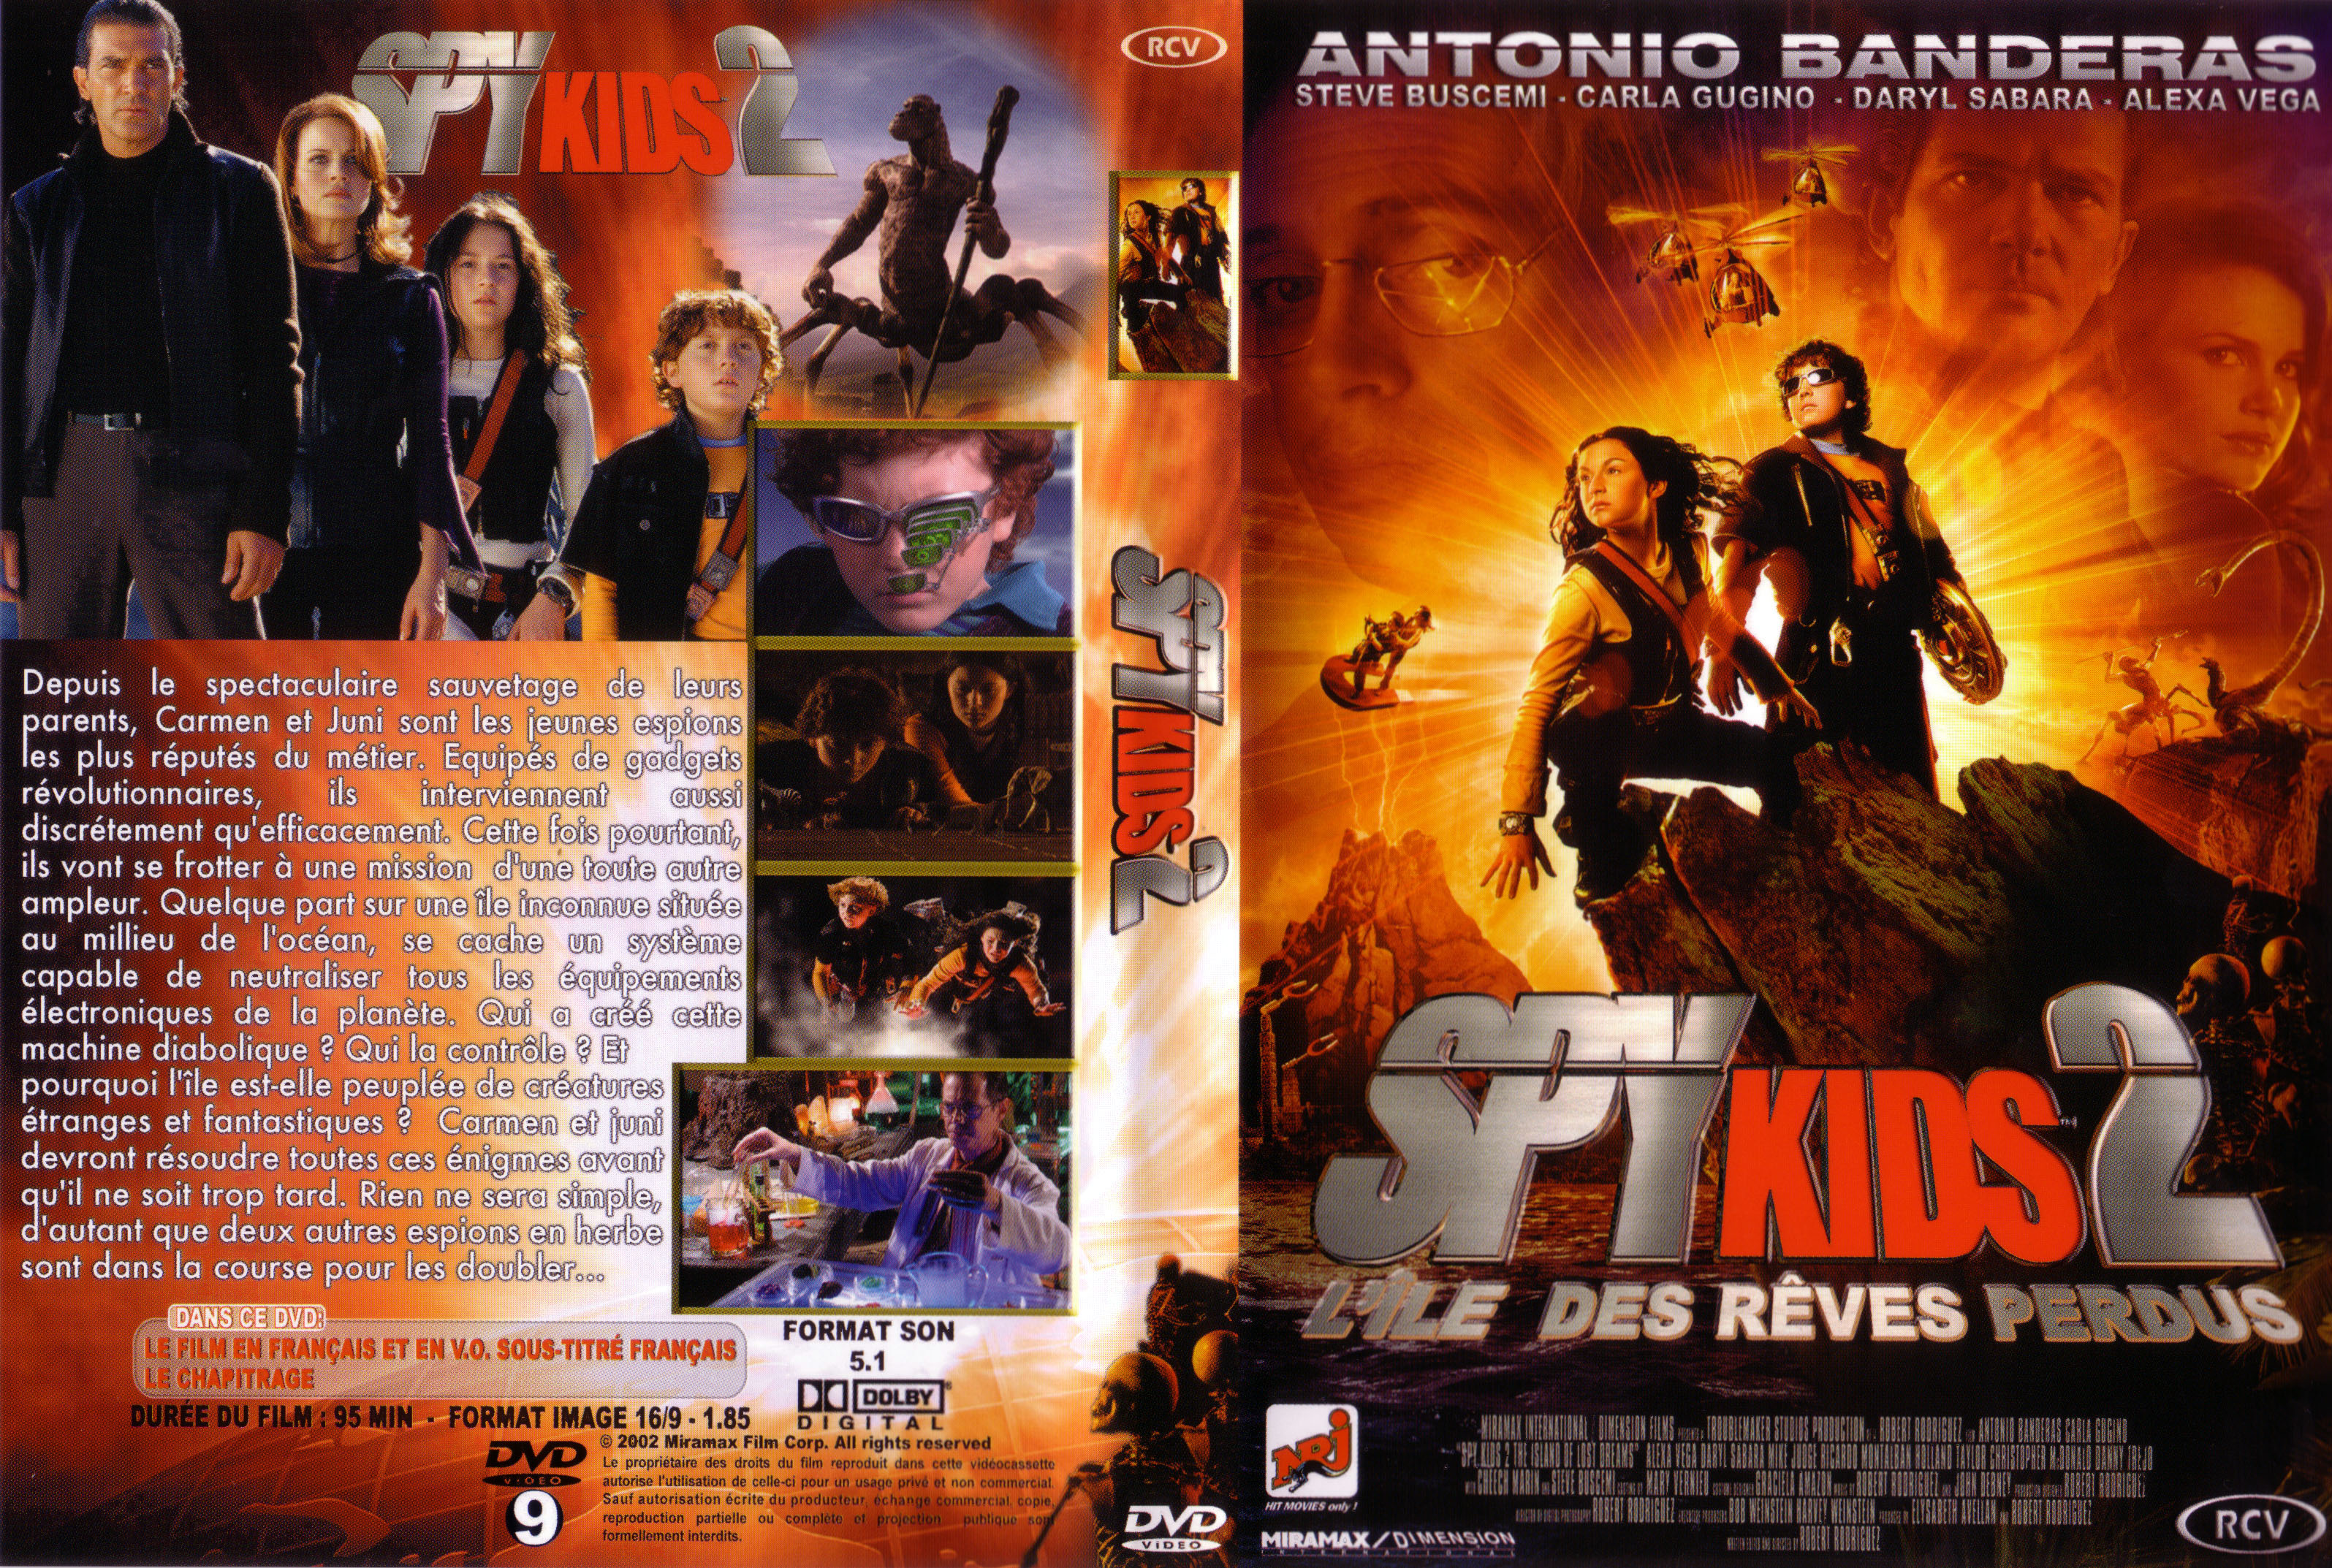 Jaquette DVD Spy kids 2 v2